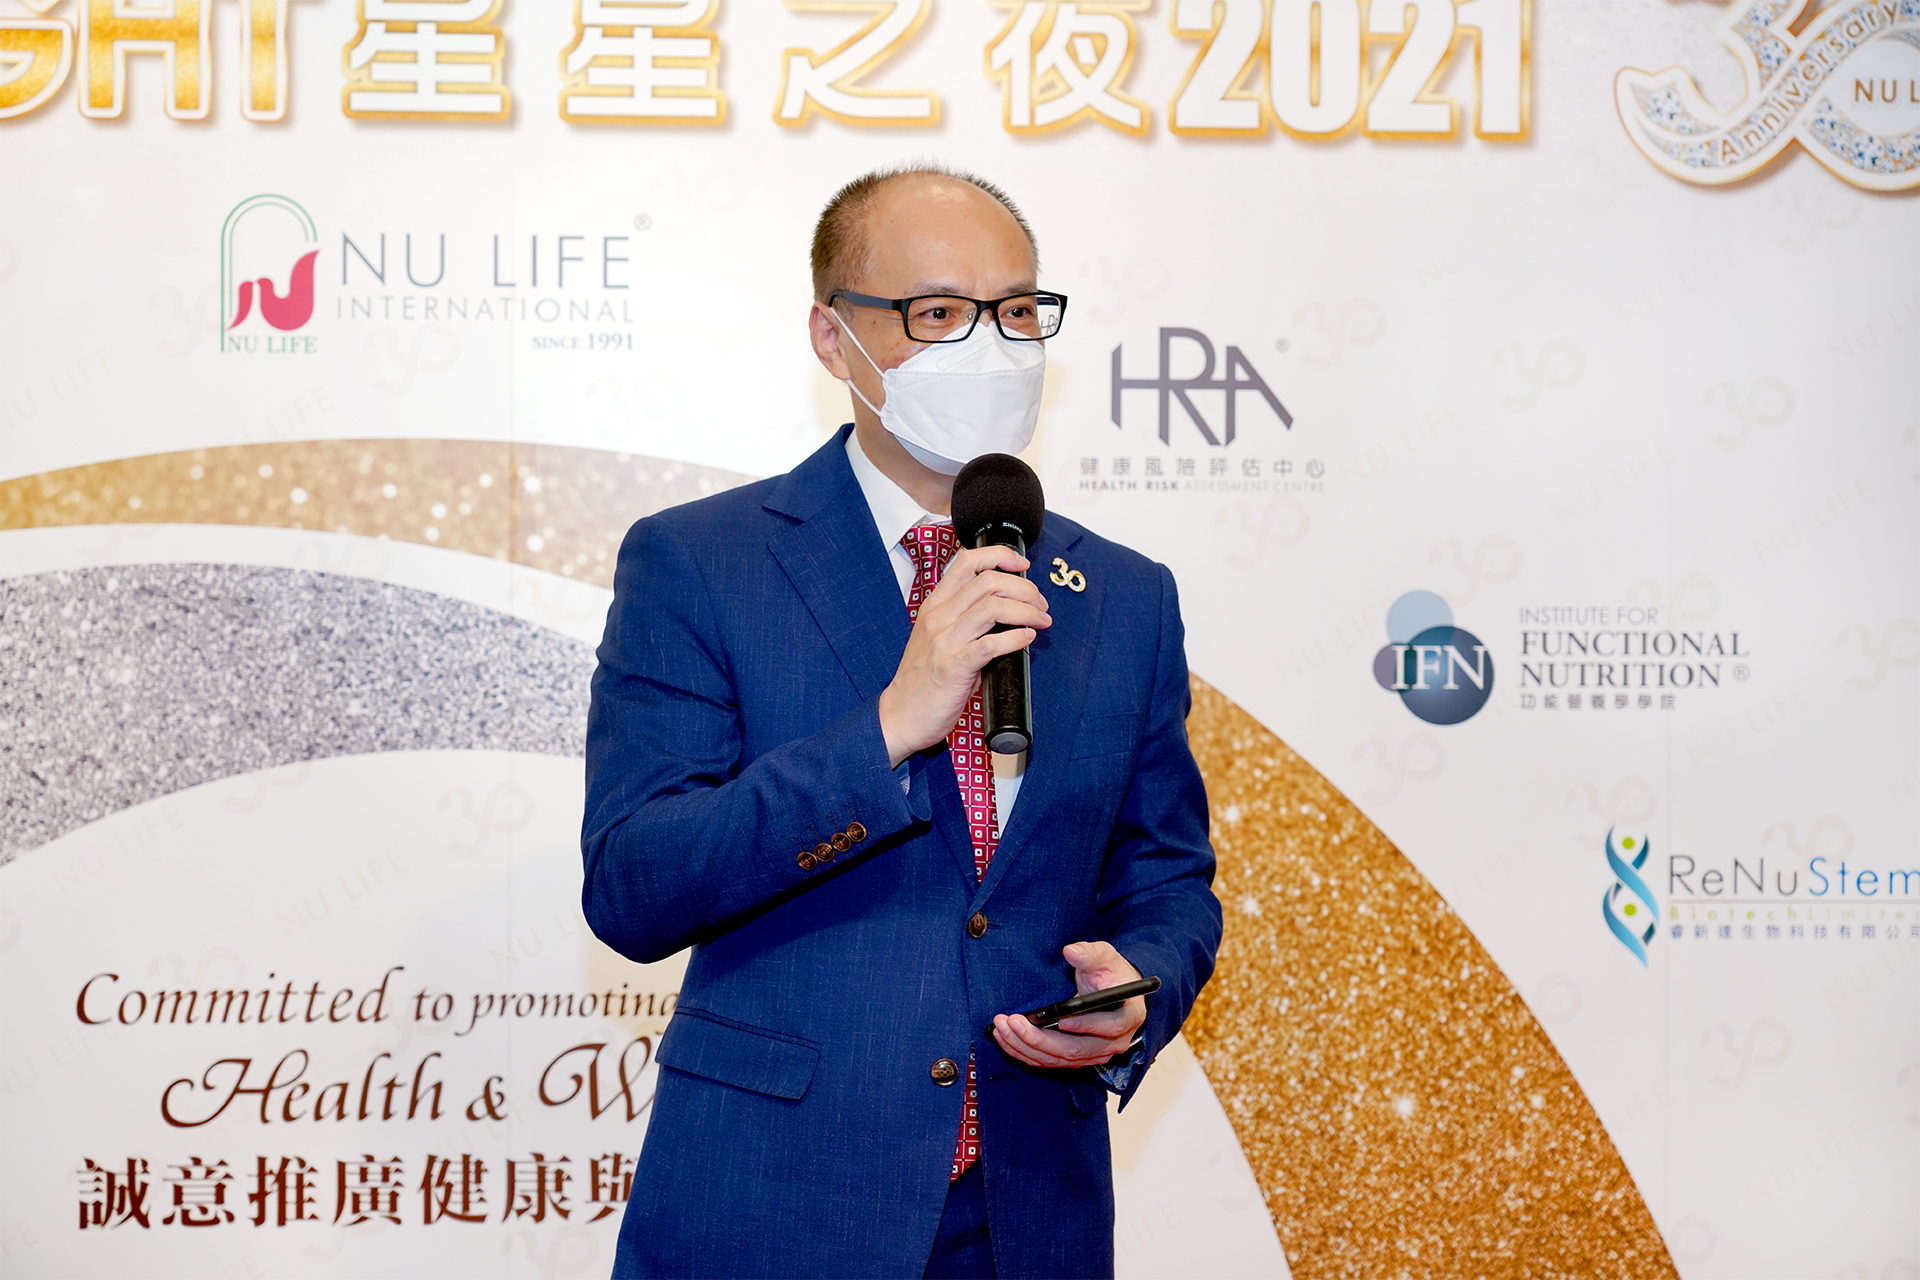 劉SIR公布「我最響往的生活」演講比賽初賽結果